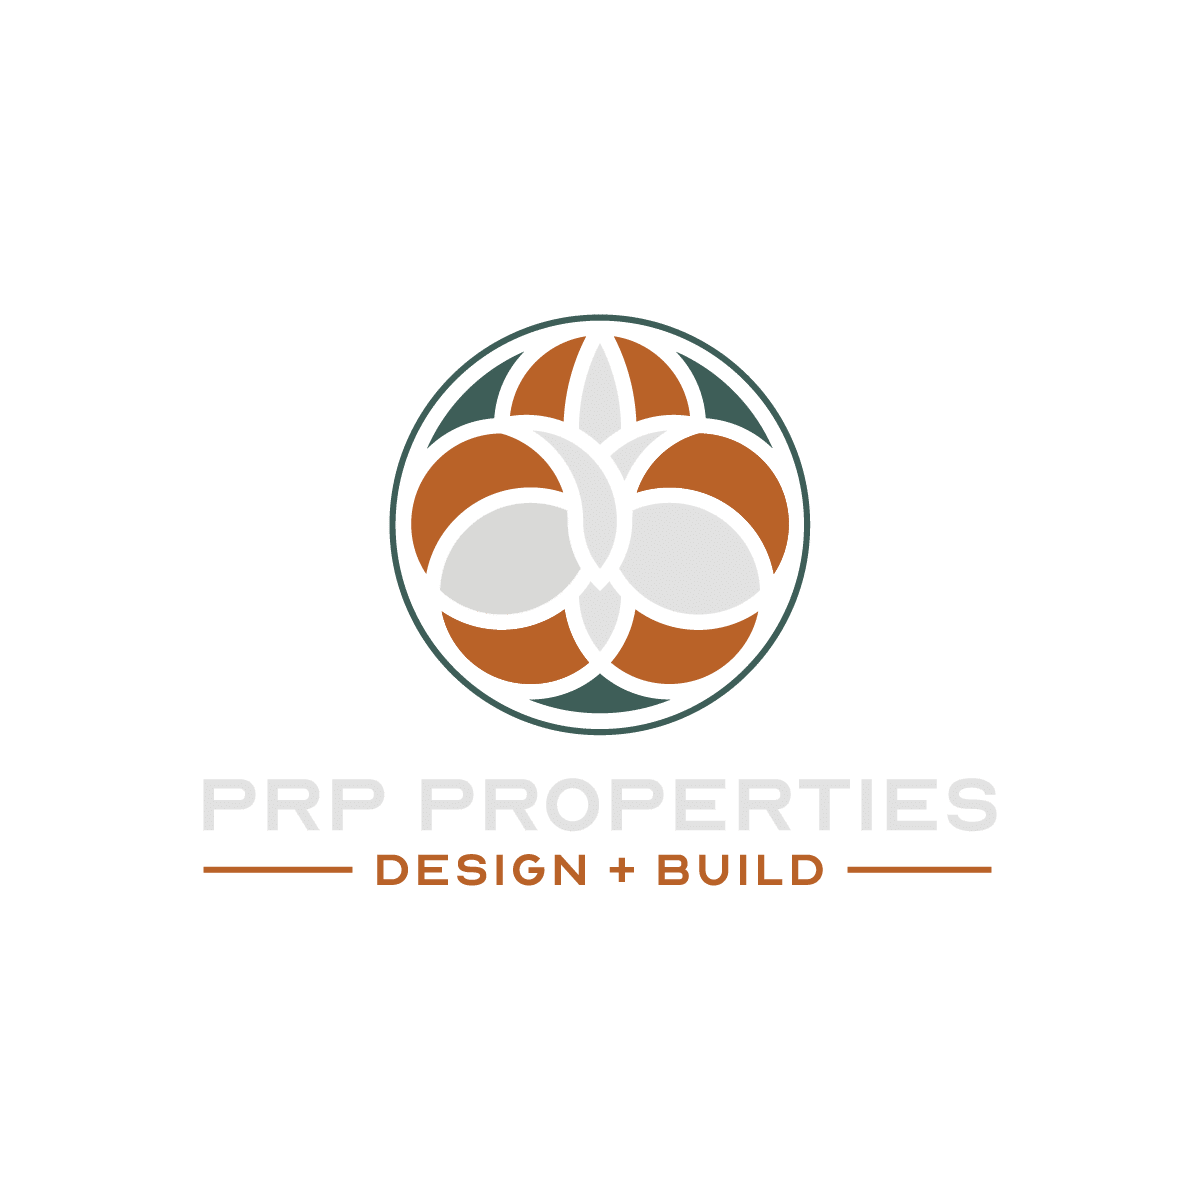 PRP Properties logo.